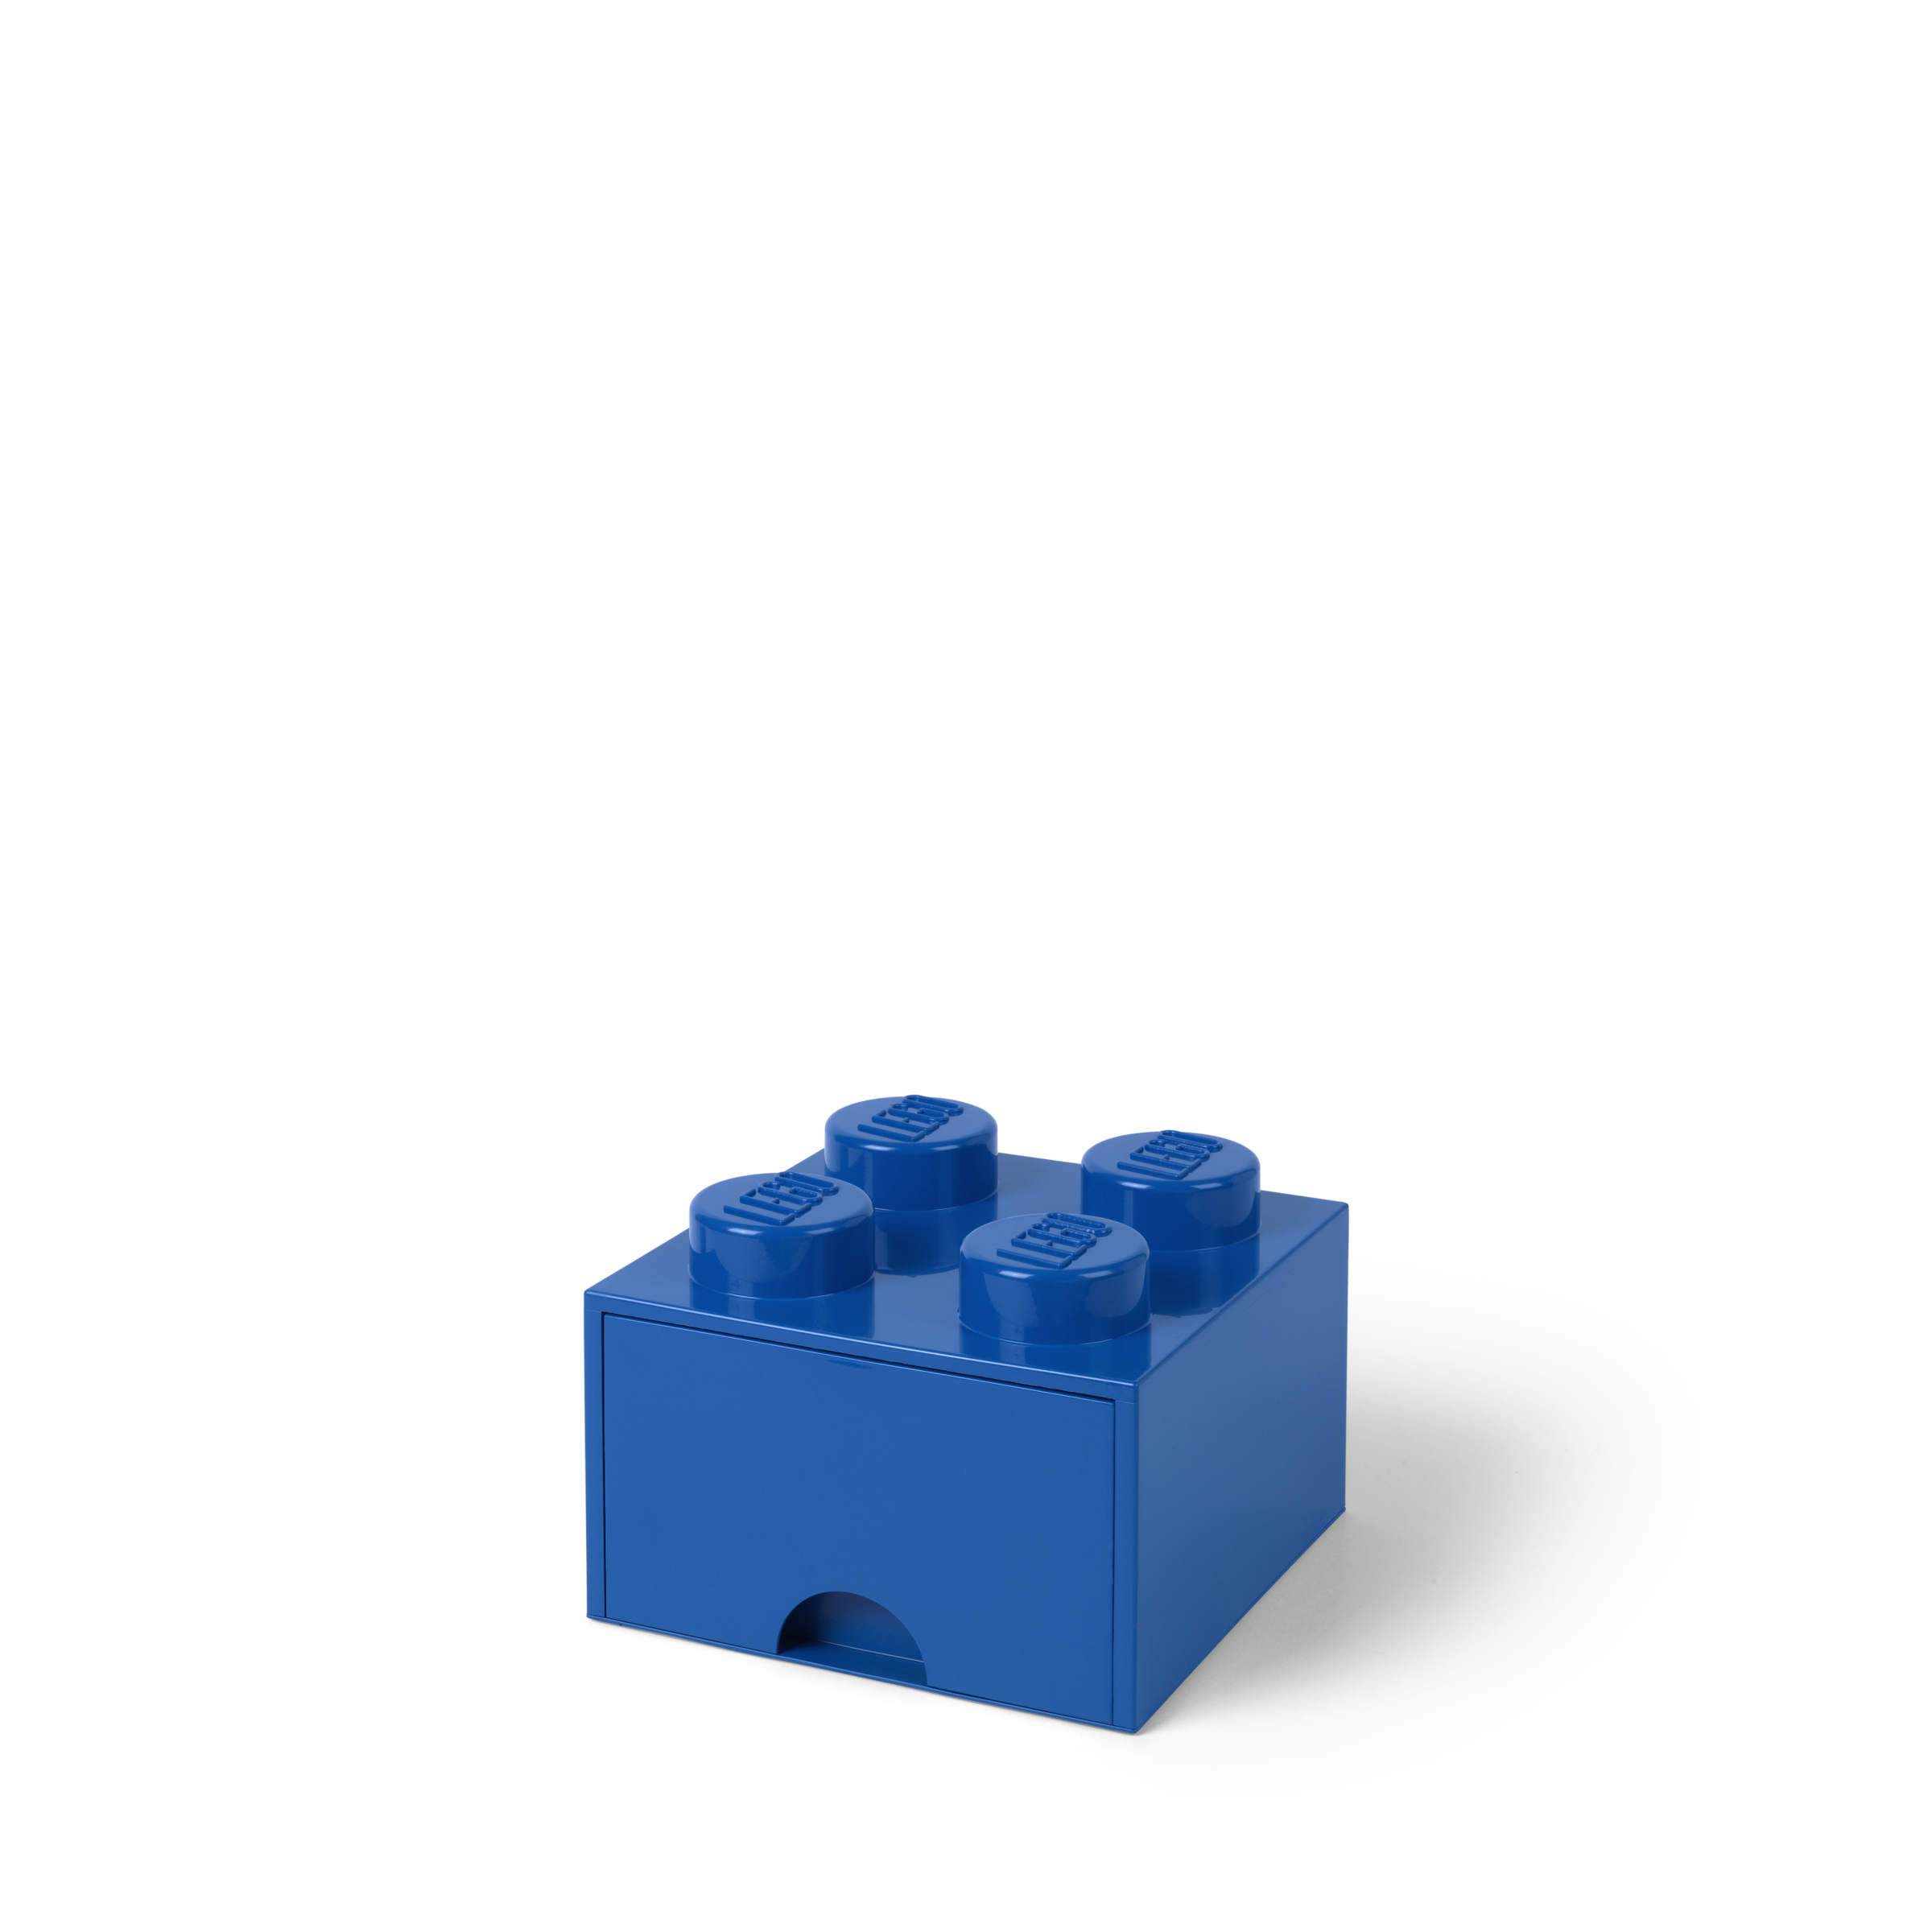 ΚΟΥΤΙ ΑΠΟΘΗΚΕΥΣΗΣ LEGO ΤΕΤΡΑΓΩΝΟ ΜΠΛΕ ΣΥΡΤΑΡΩΤΟ 25x25x18cm- 40051731